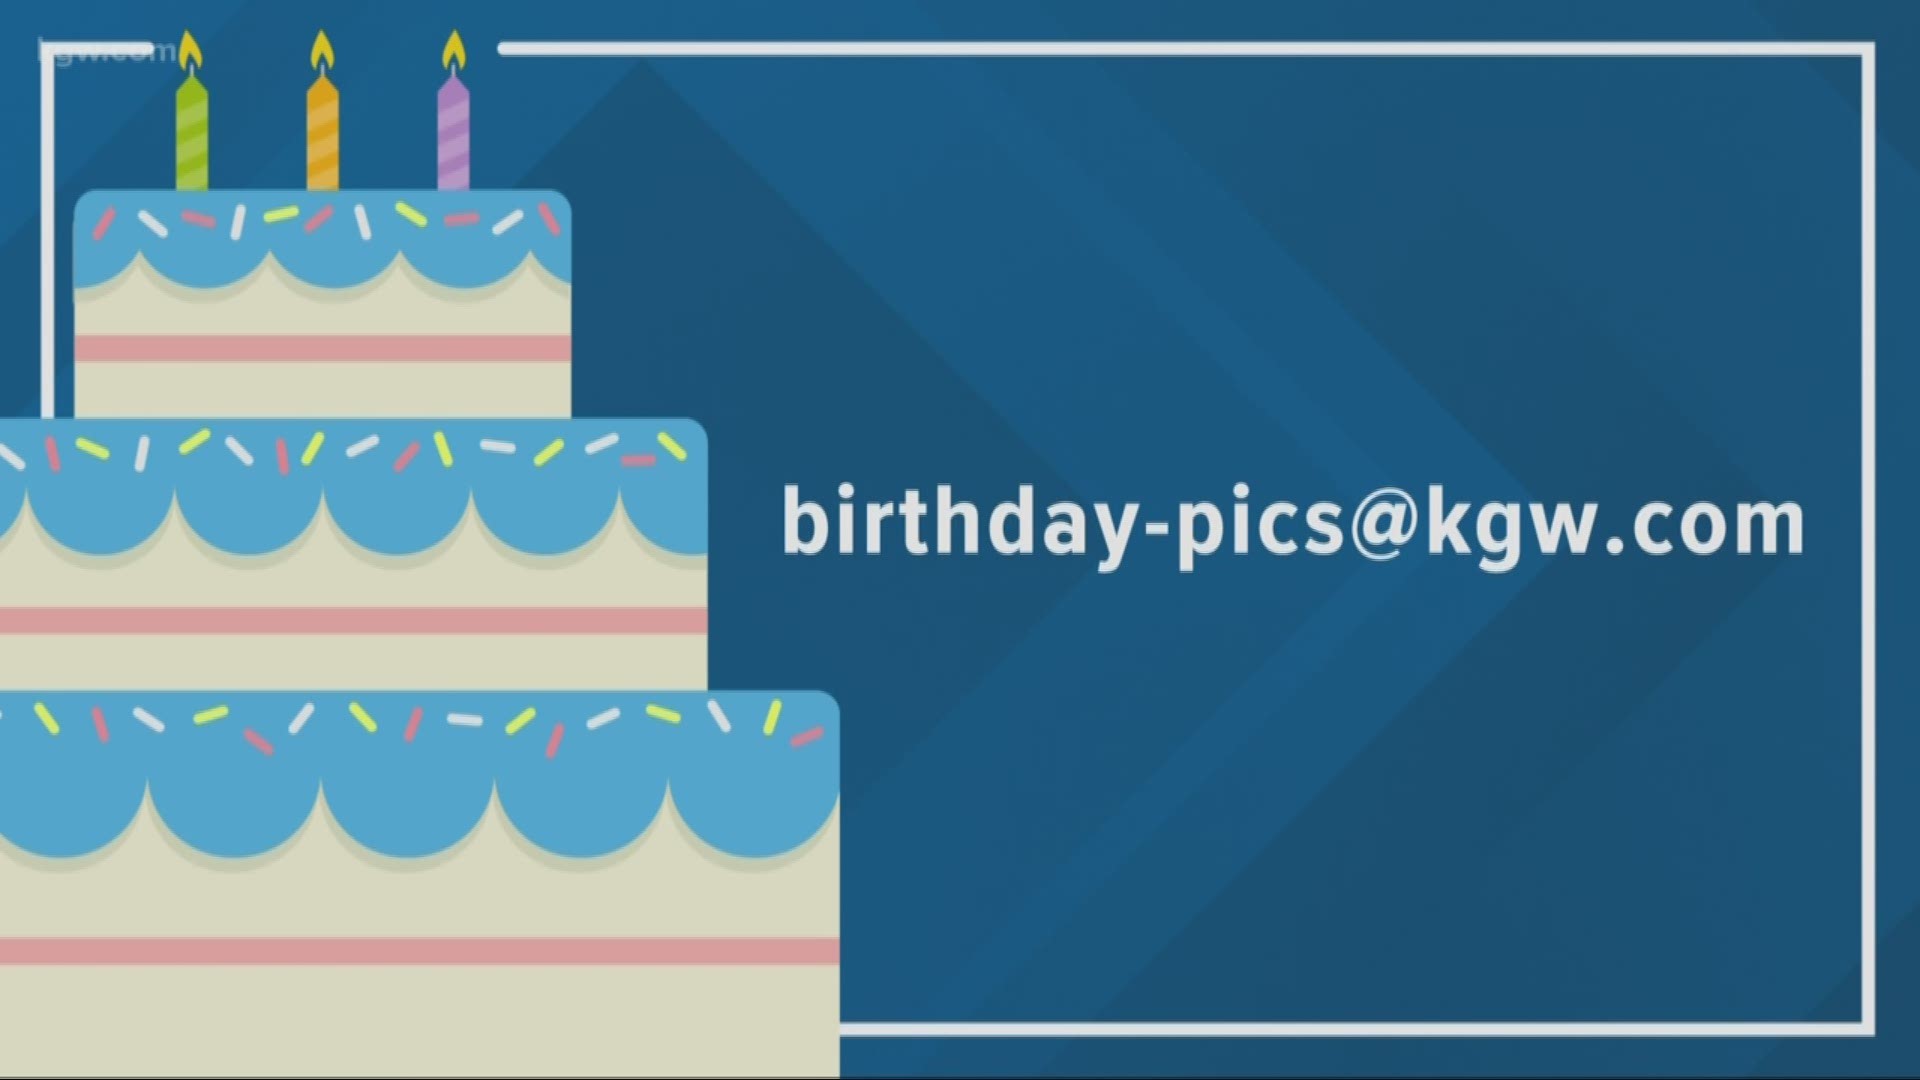 KGW viewer birthdays: 3-21-19